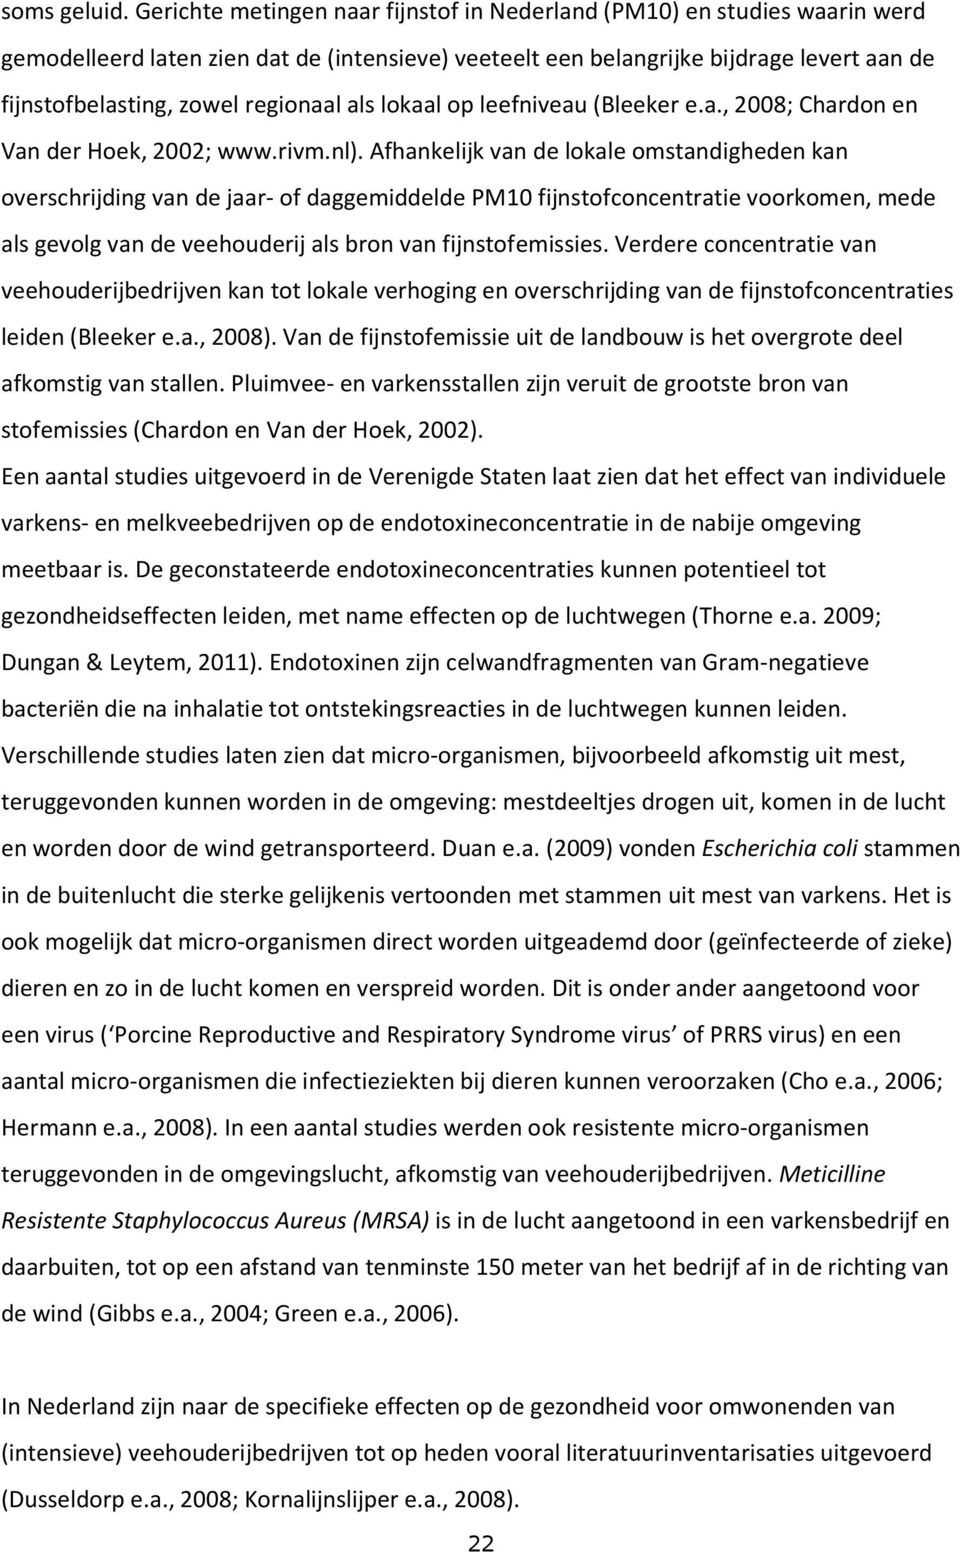 regionaal als lokaal op leefniveau (Bleeker e.a., 2008; Chardon en Van der Hoek, 2002; www.rivm.nl).